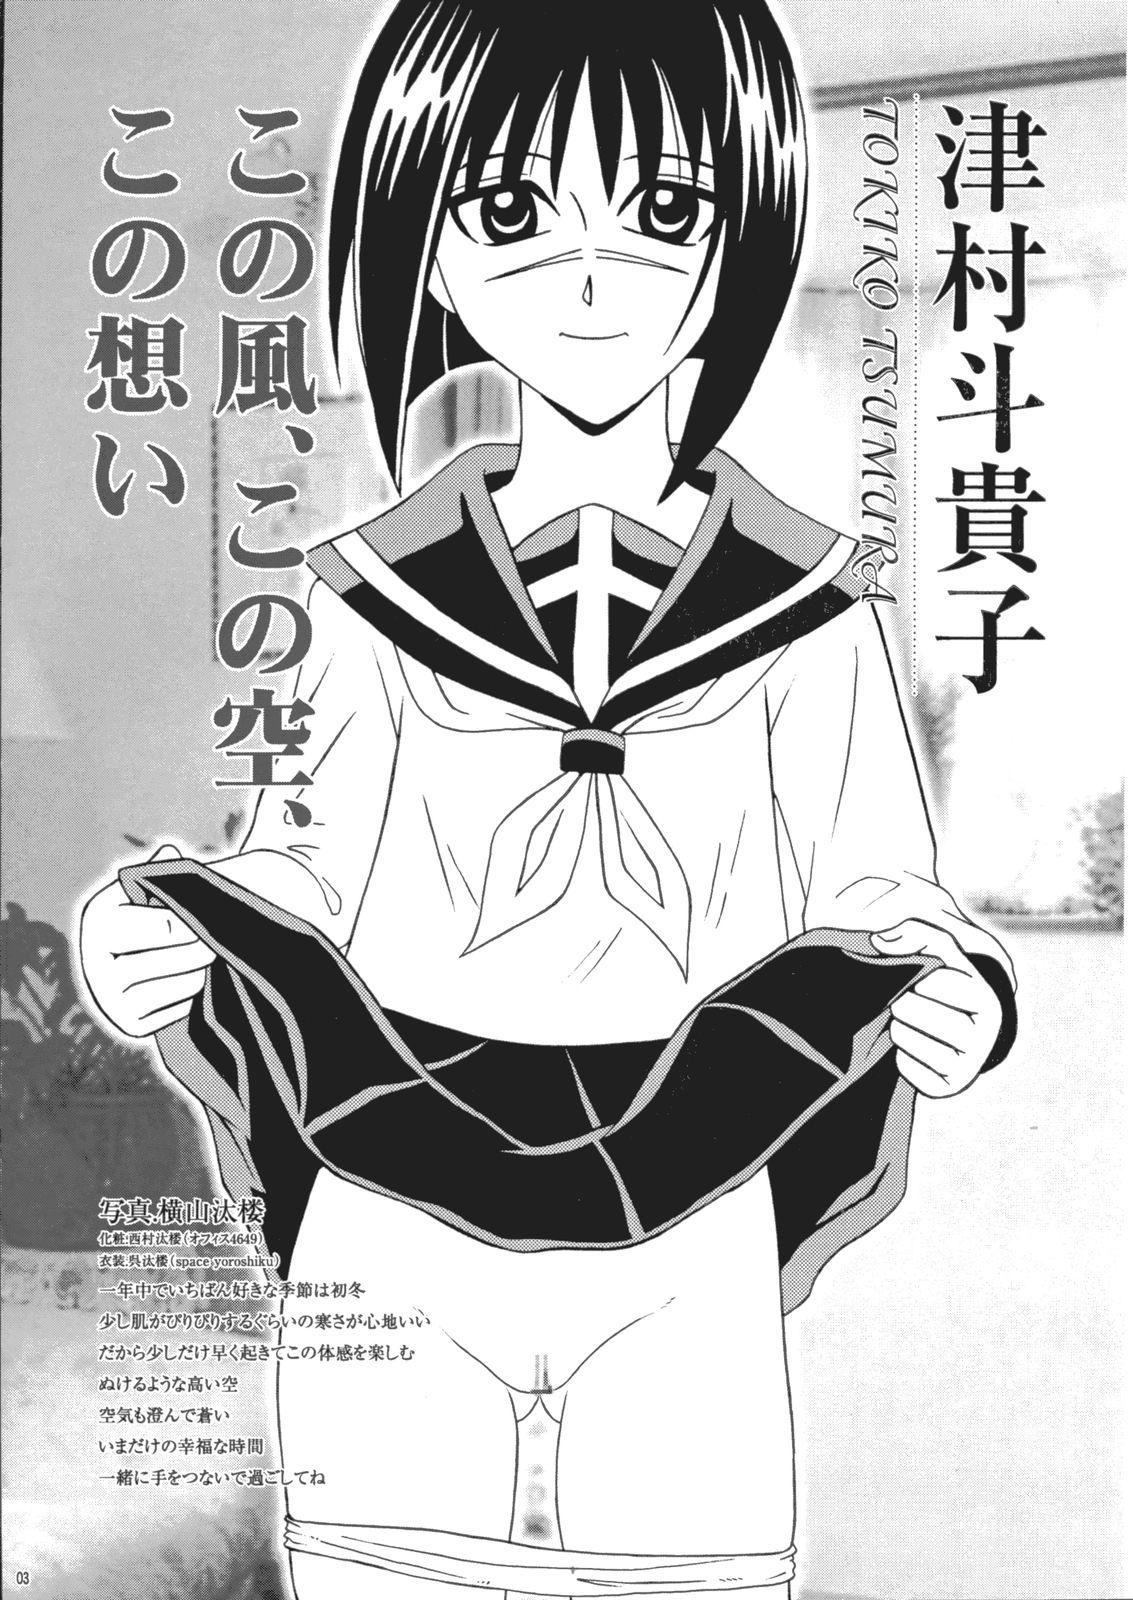 Fucking Saku-chan Kurabu Vol.03 - Naruto One piece Ichigo 100 Is Hikaru no go Family Roleplay - Page 2